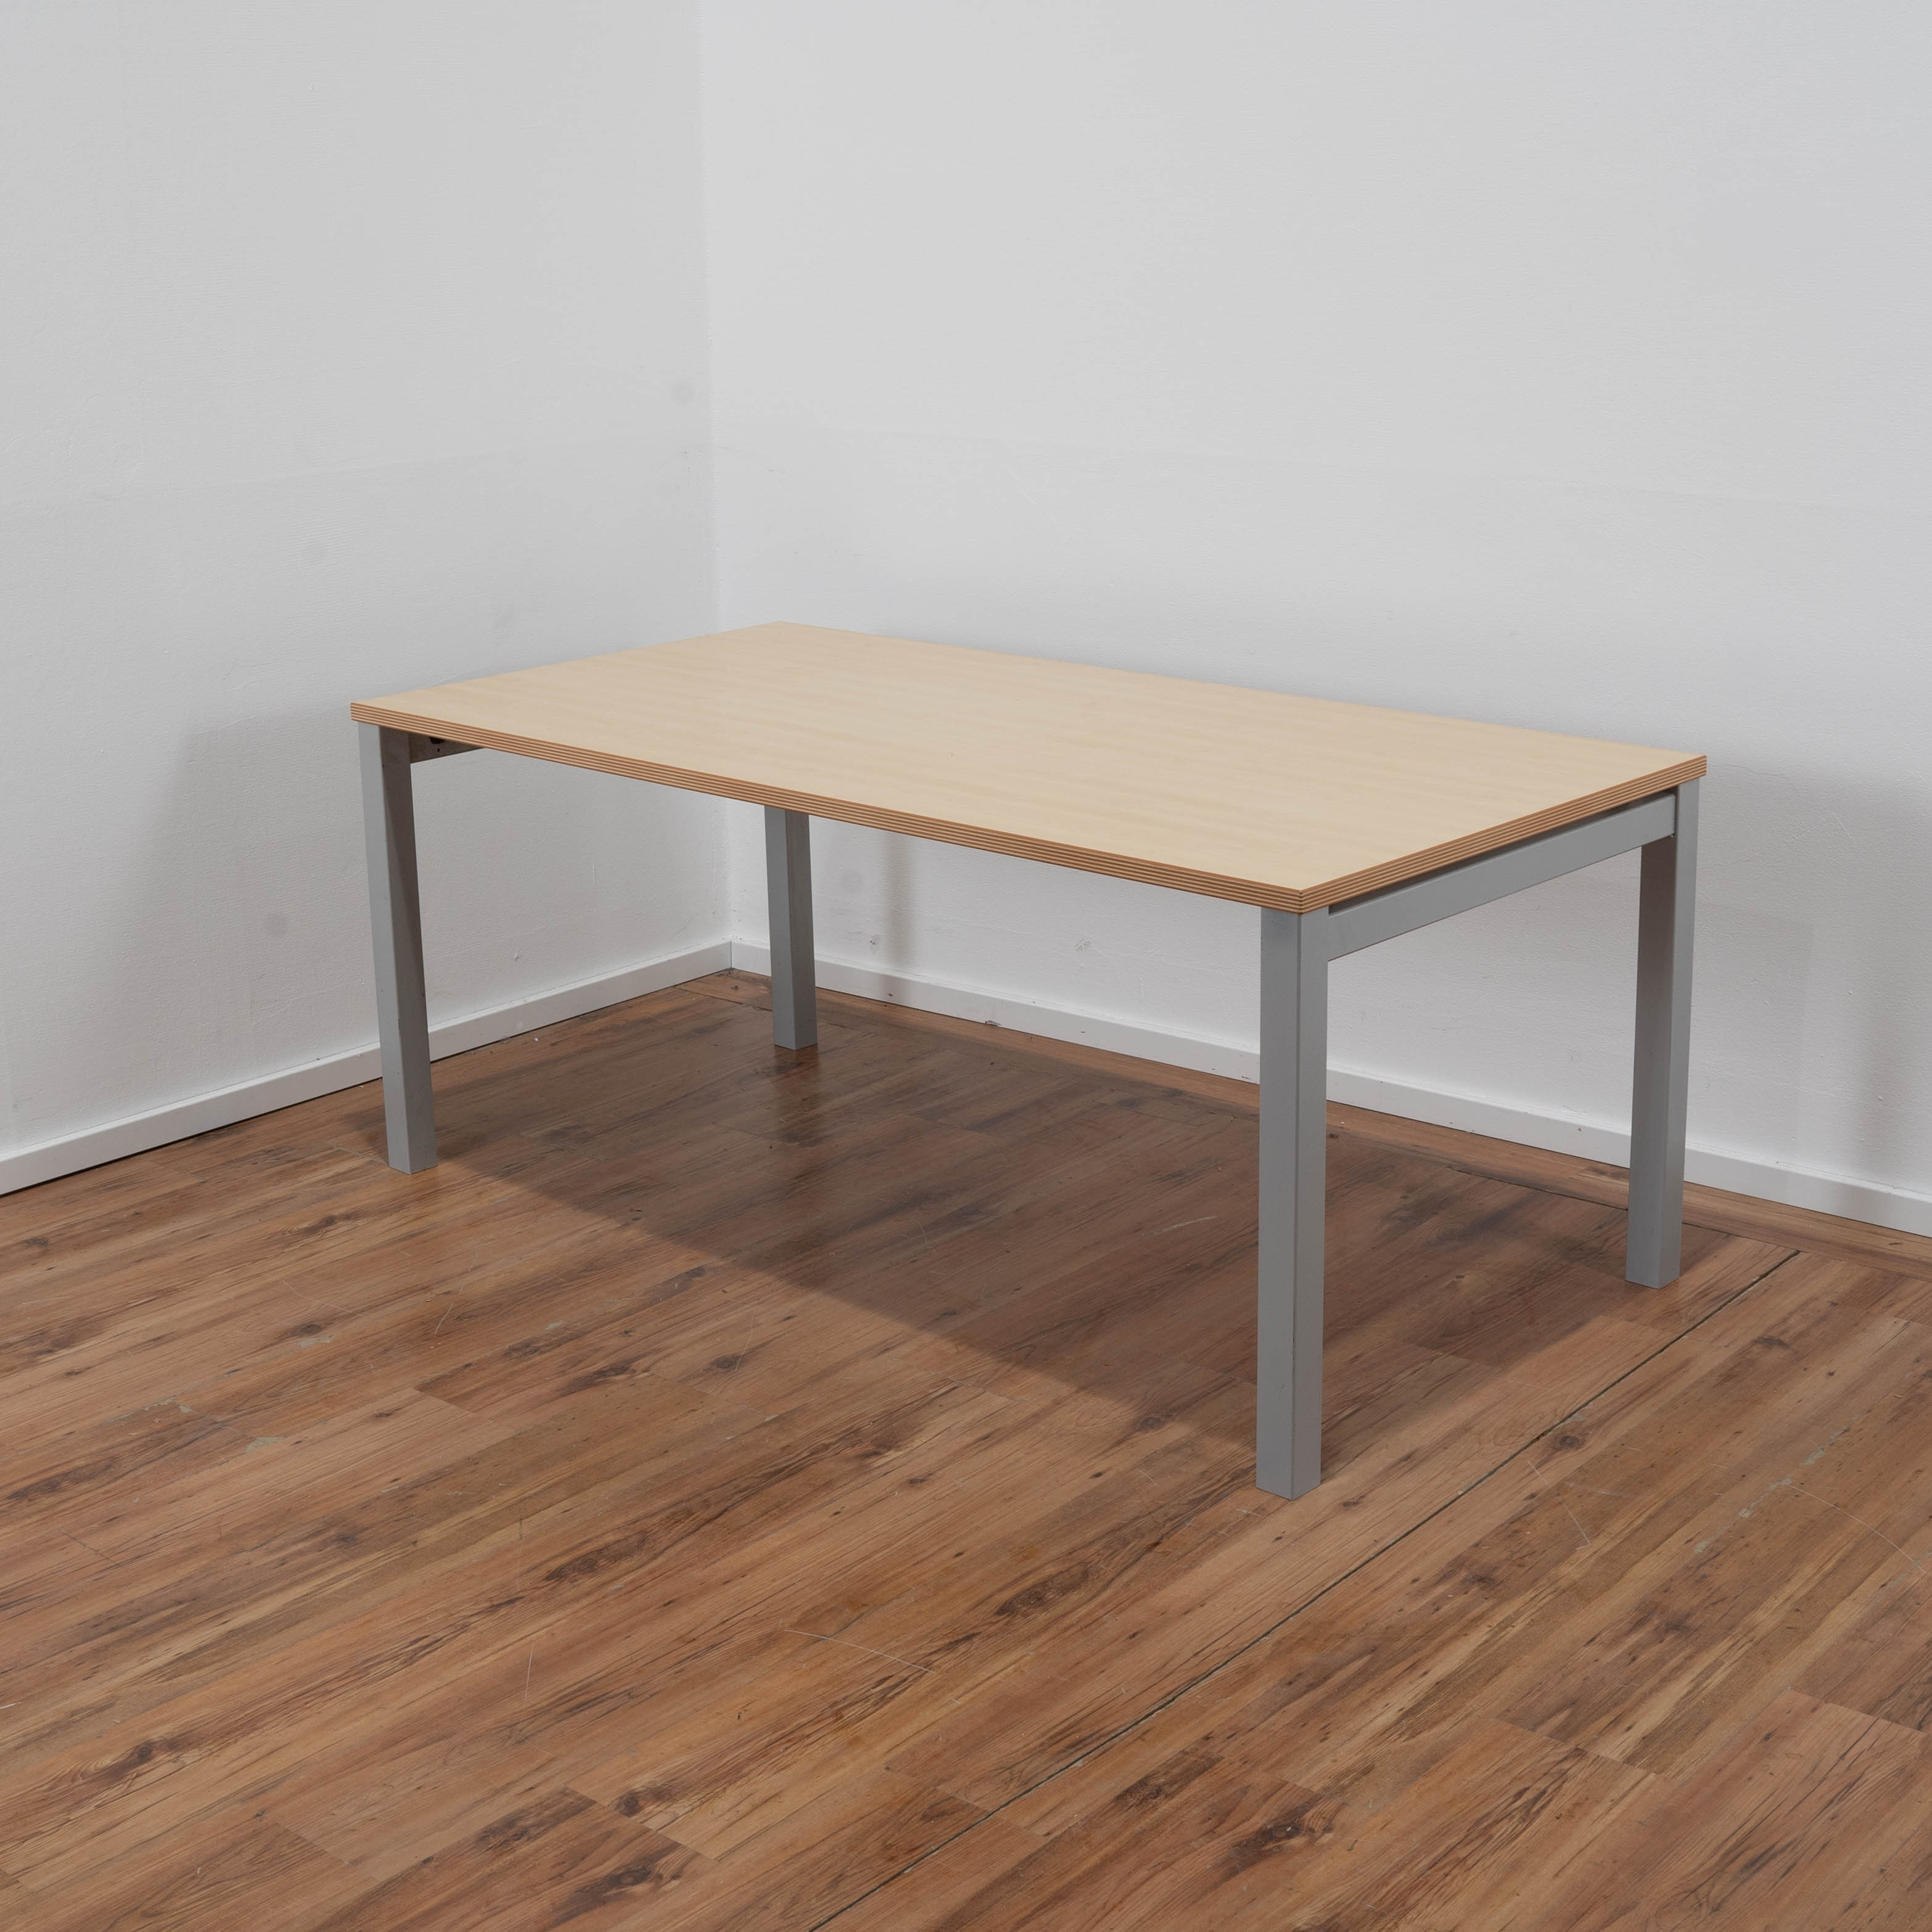 Steelcase Schreibtisch Ahorn - 160 x 80 cm - 4-Fußgestell grau 